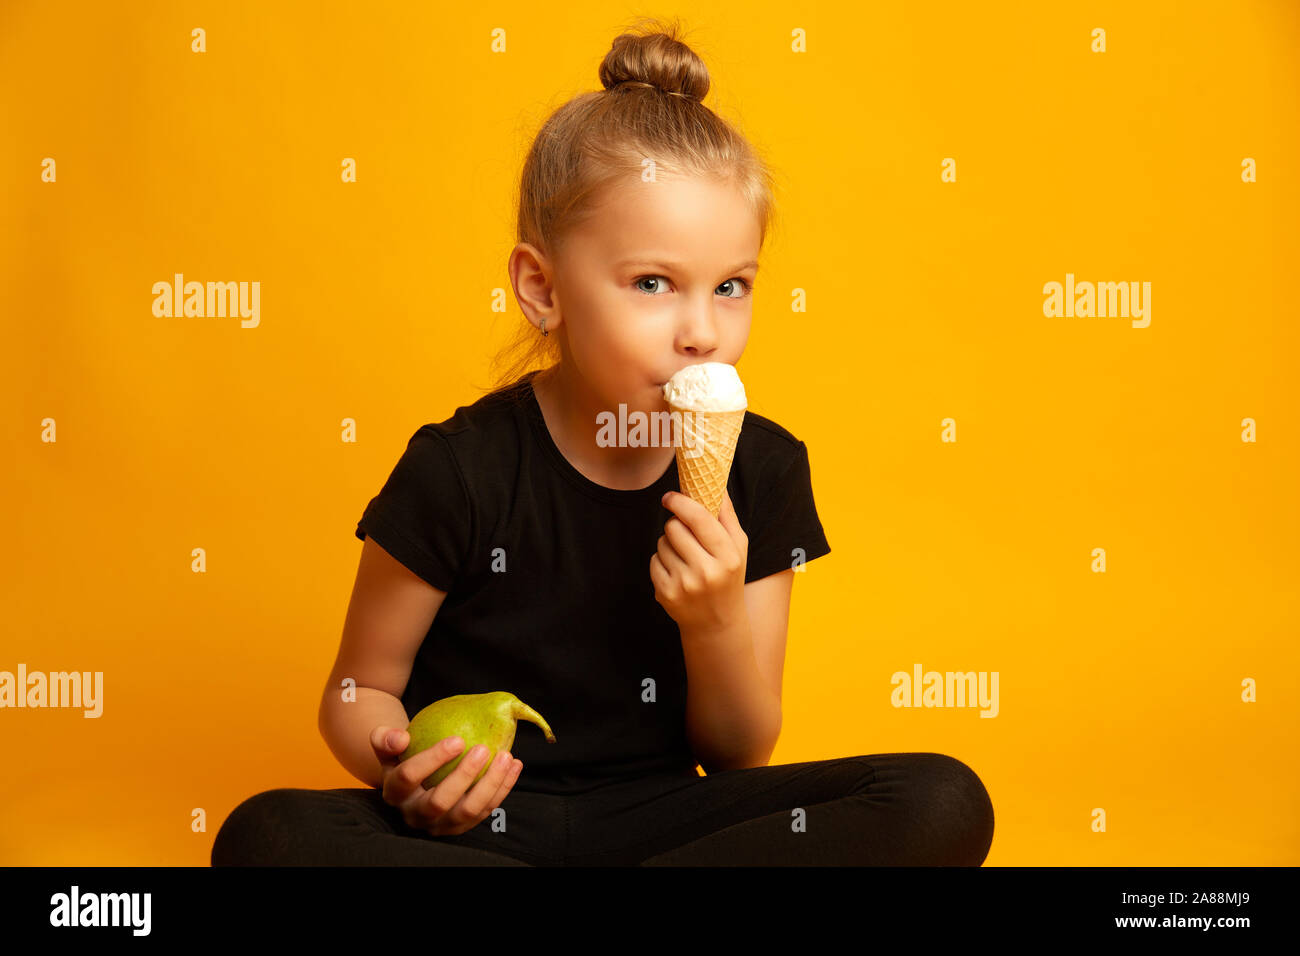 Kleines Mädchen in Body und Tanz Schuhe die Wahl zwischen gesunden und ungesunden Essen während der Sitzung gegen den gelben Hintergrund gekreuzten Beinen verwirrt Stockfoto